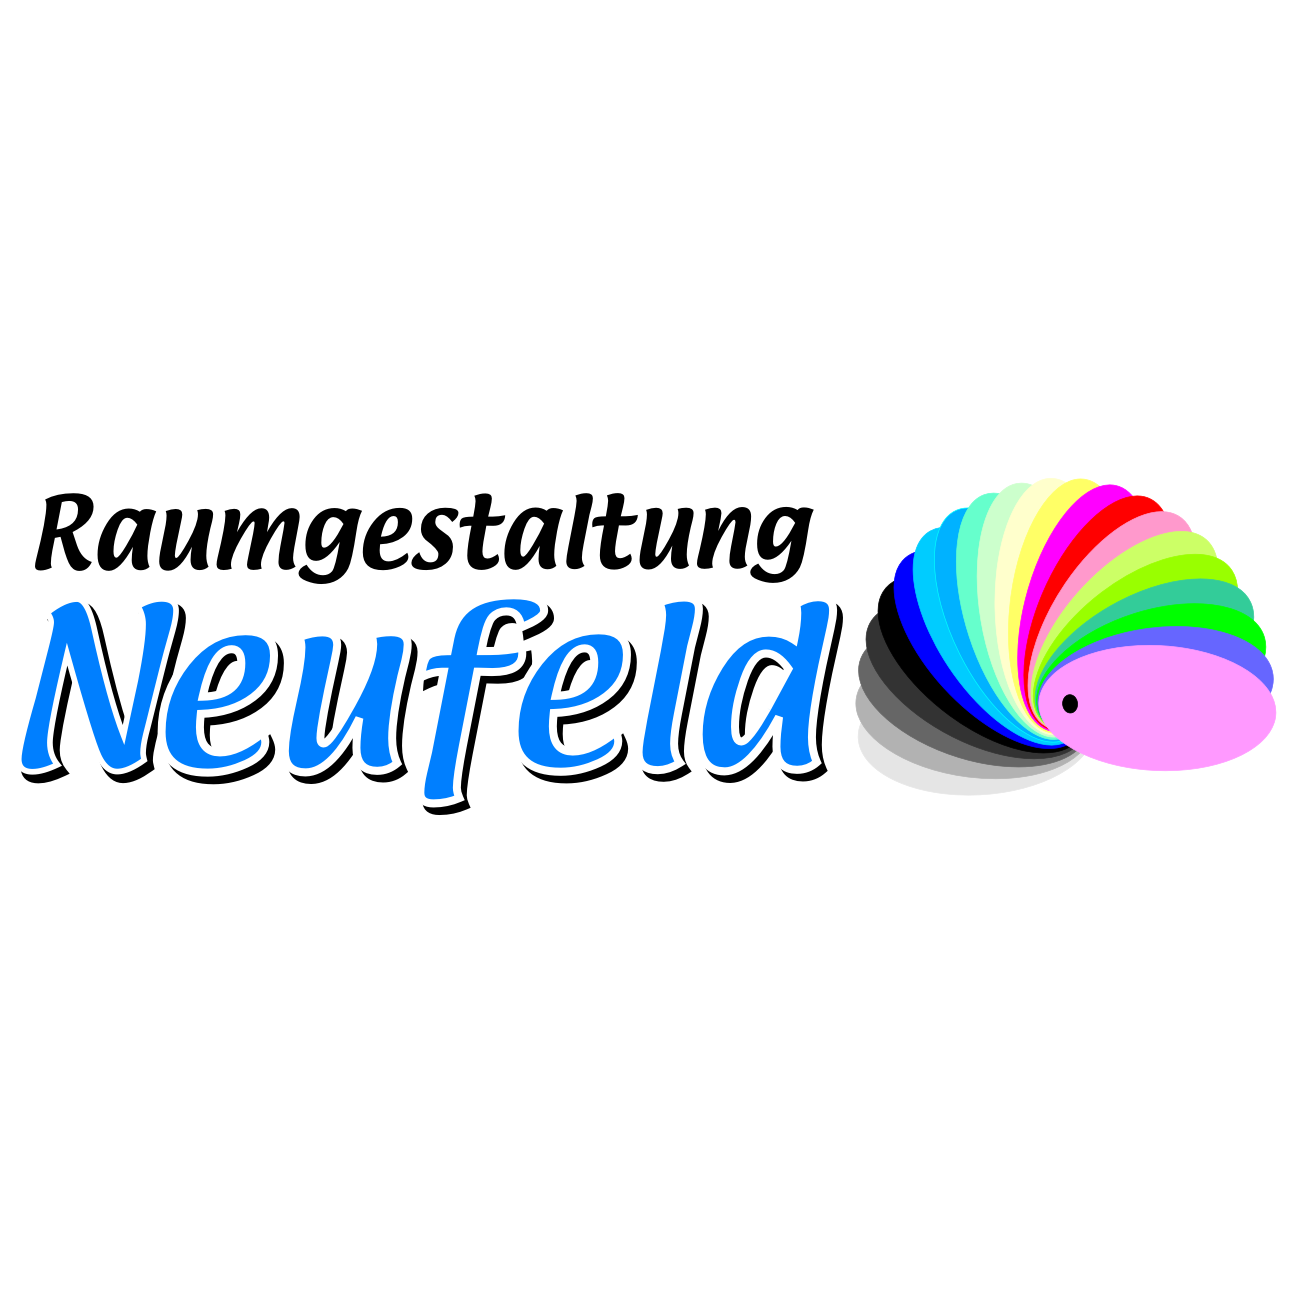 Raumgestaltung Neufeld GmbH&Co.KG